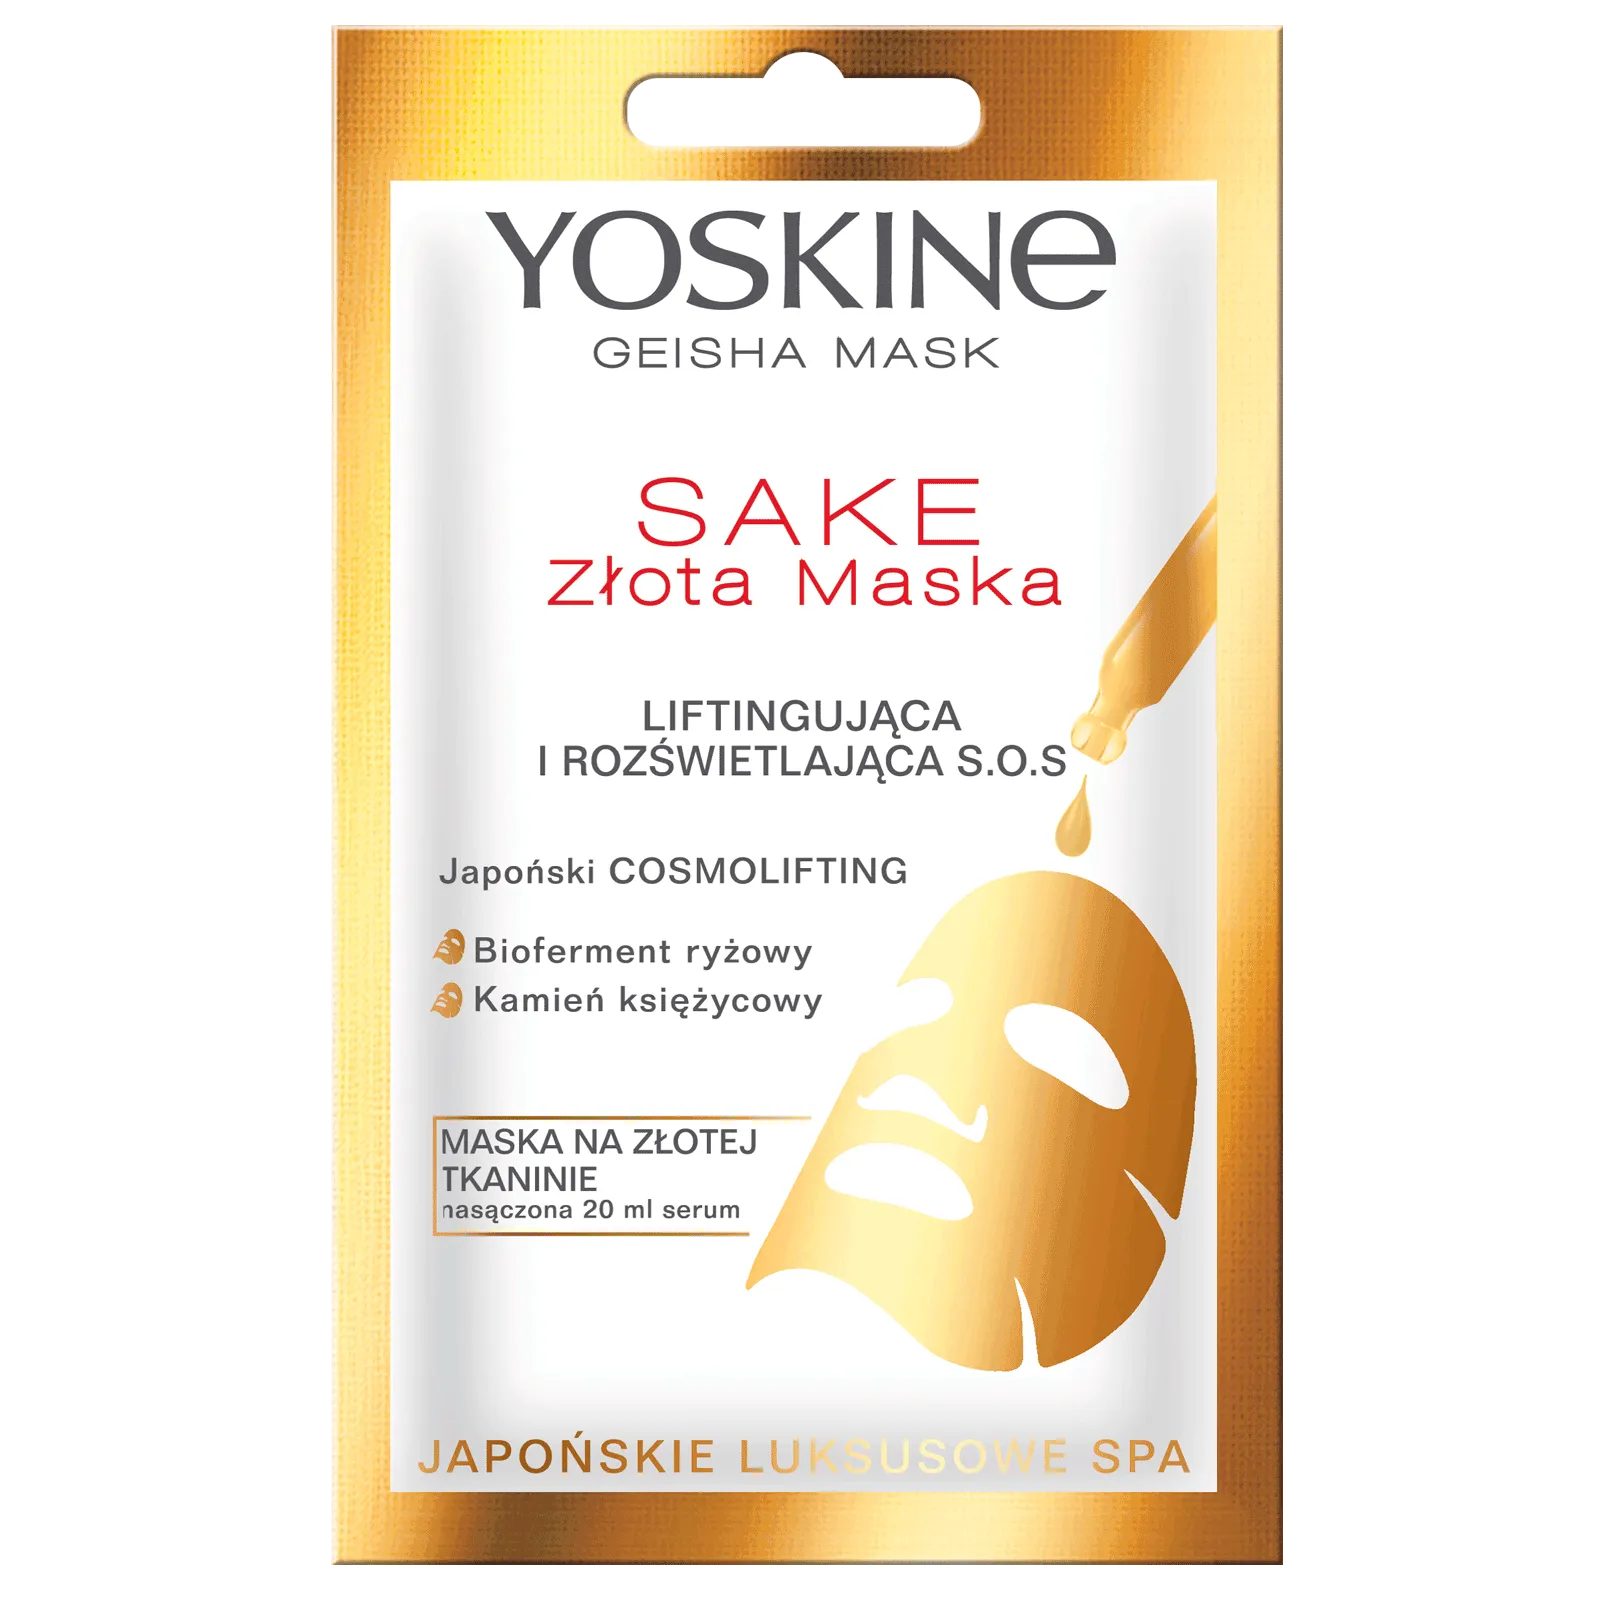 Yoskine Geisha Mask złota maska Sake liftingująco-rozświetlająca na tkaninie, 1 szt.